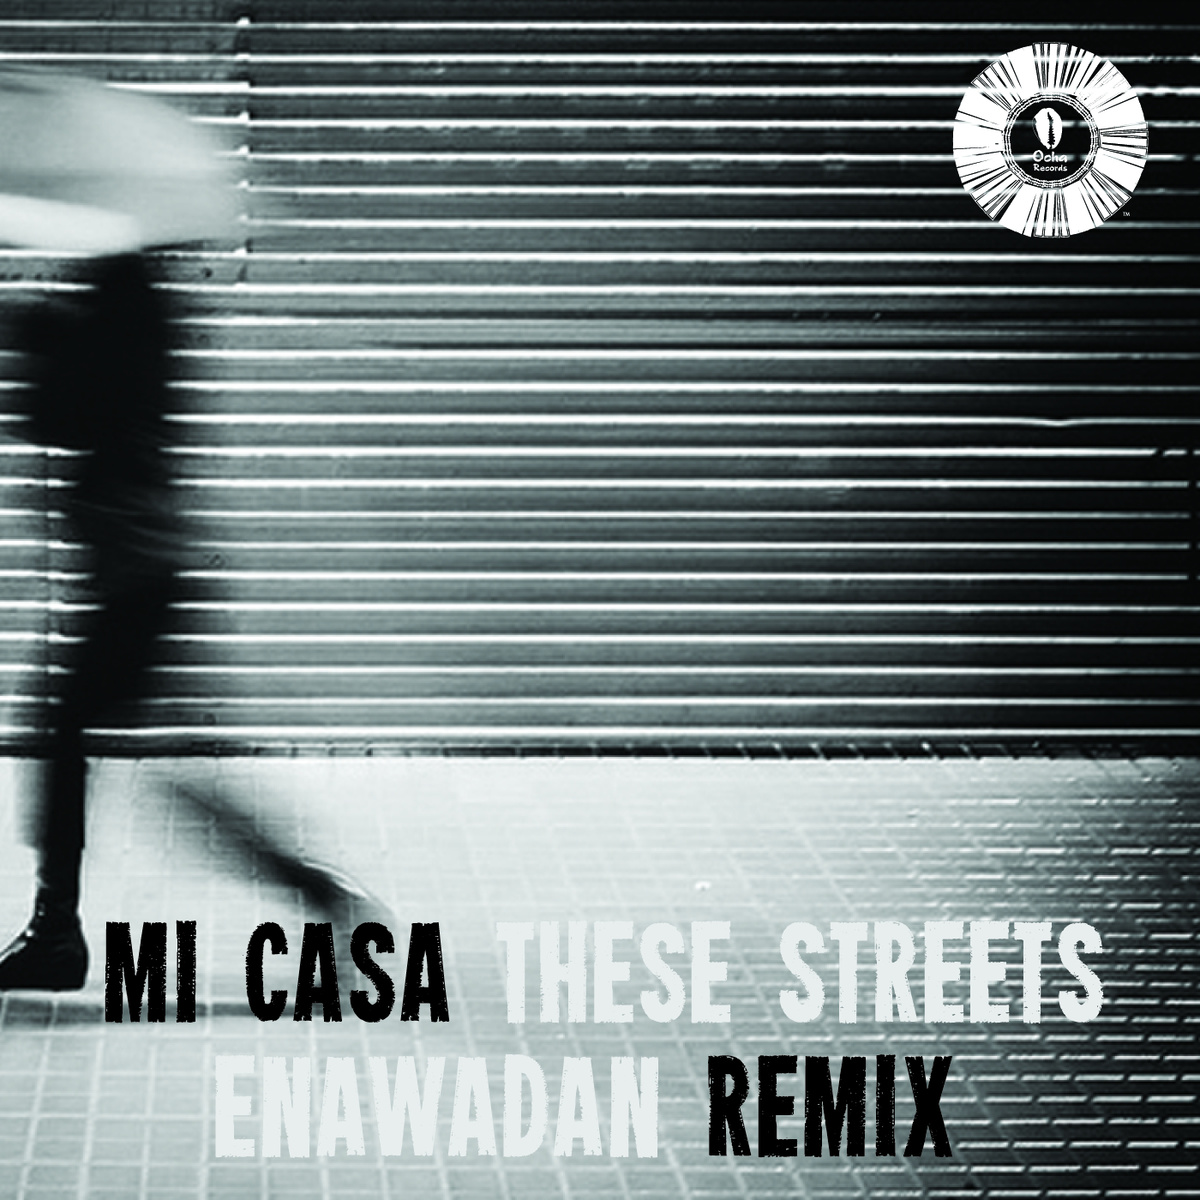 Mi Casa - These Streets (Enawadan Remix)